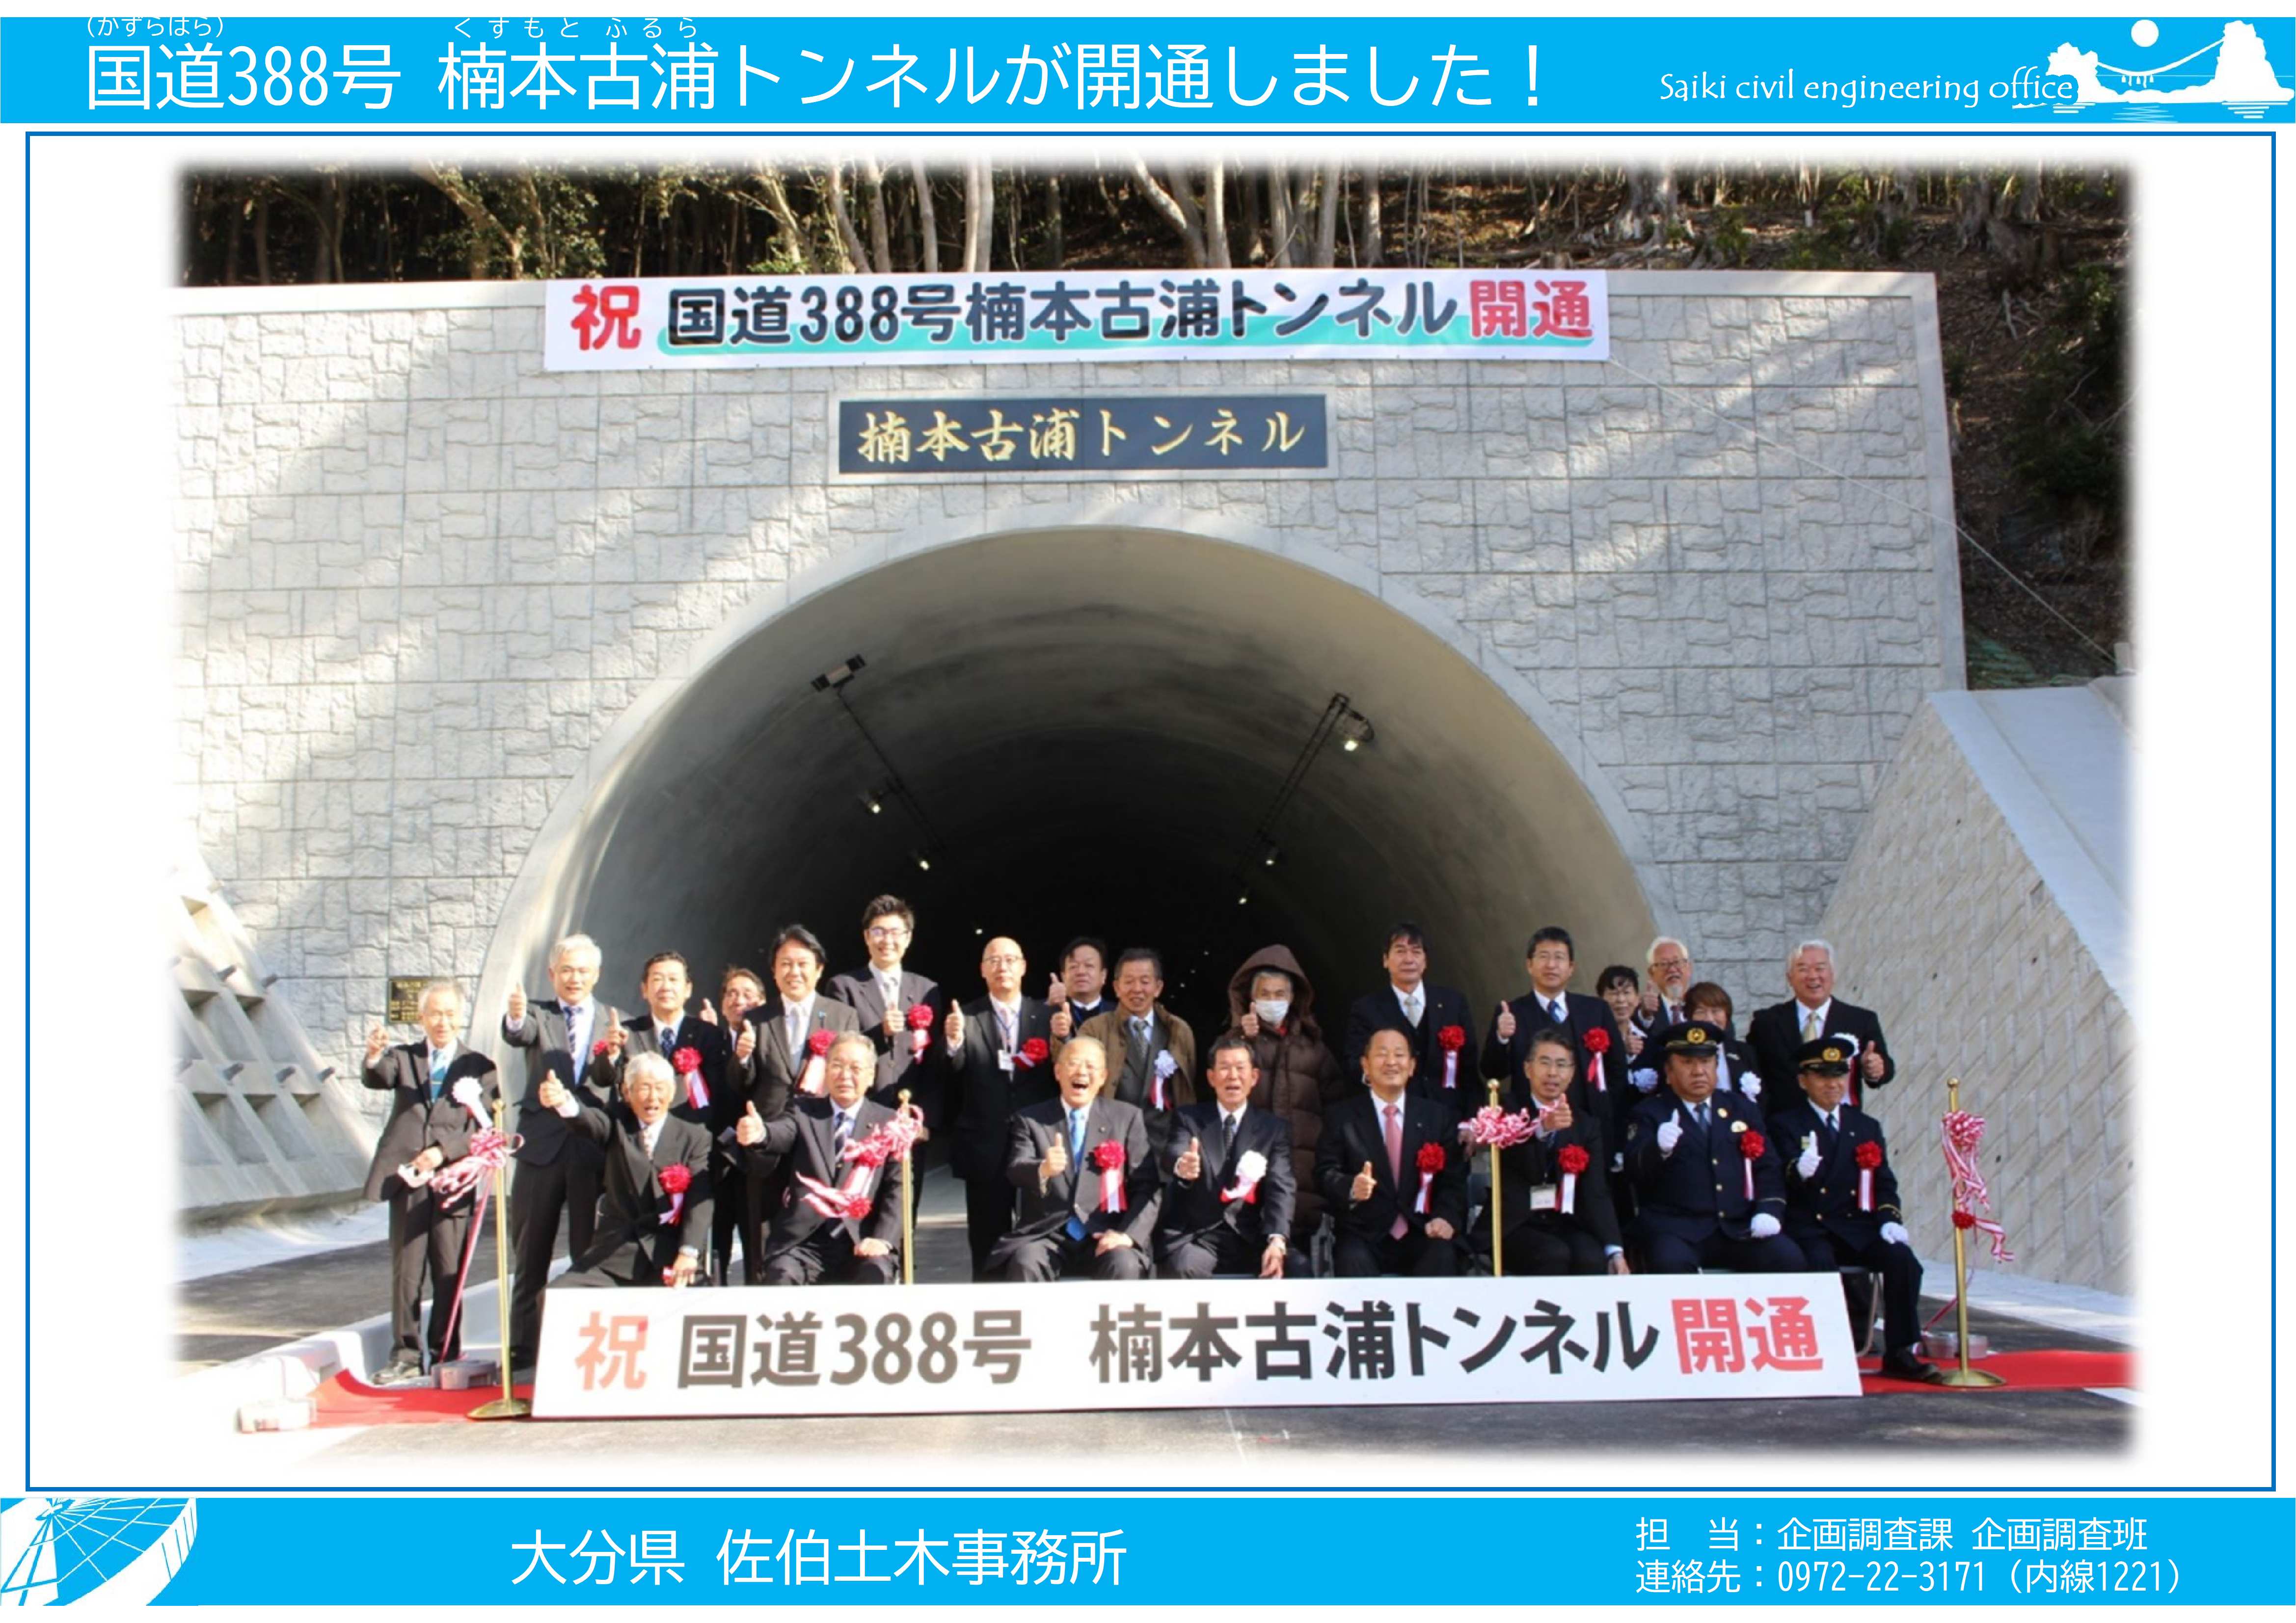 国道388号楠本古浦トンネル開通2月5日